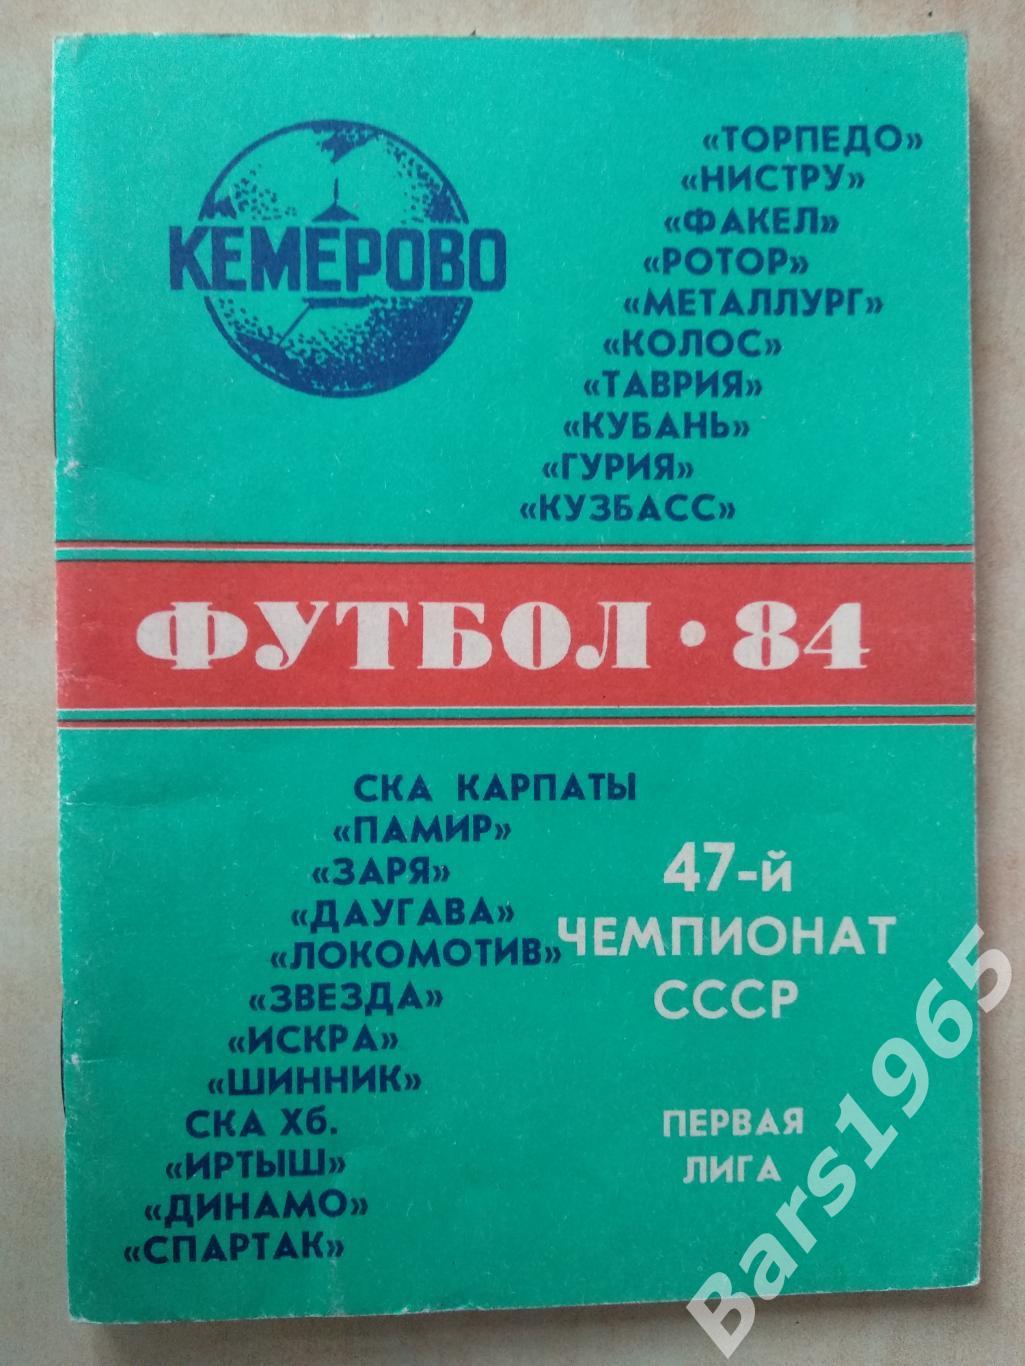 Кемерово 1984